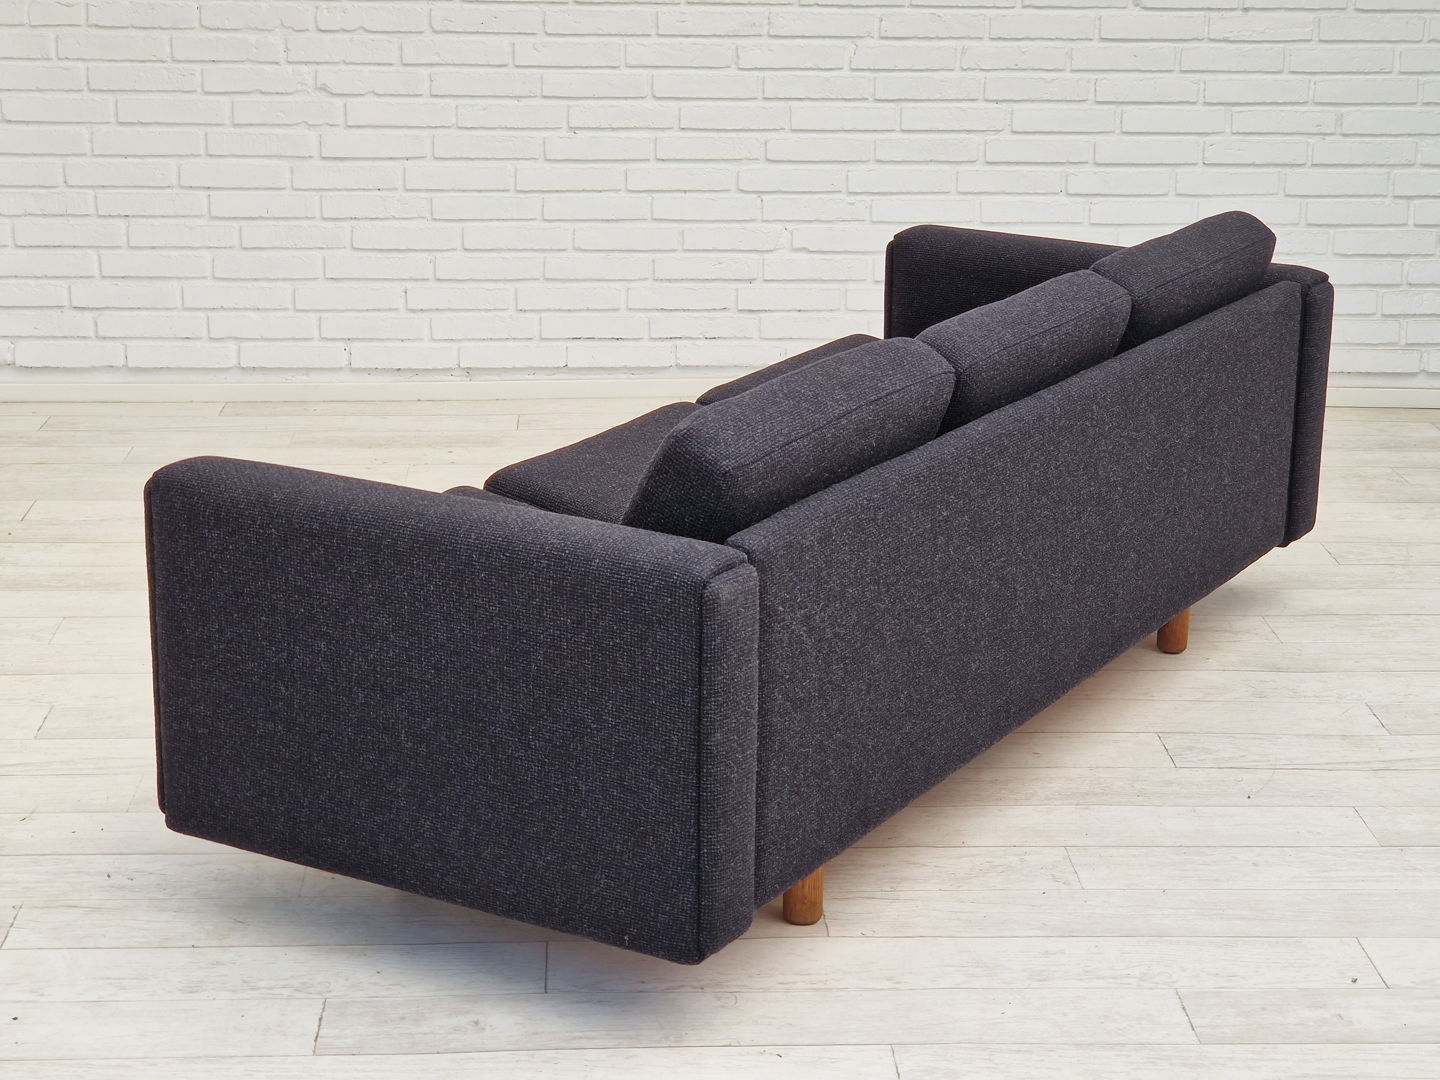 1970s, Danish design by H.J. Wegner, model GE 300, reupholstered sofa.